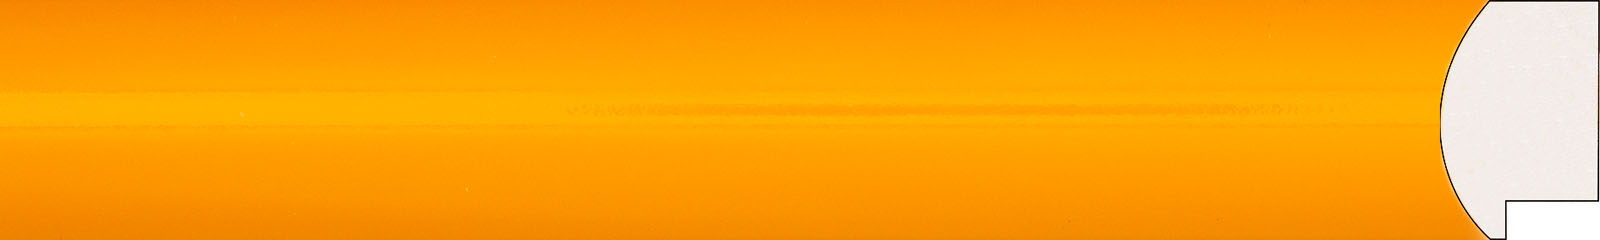 Картинный багет 1624 цвет оранжевый